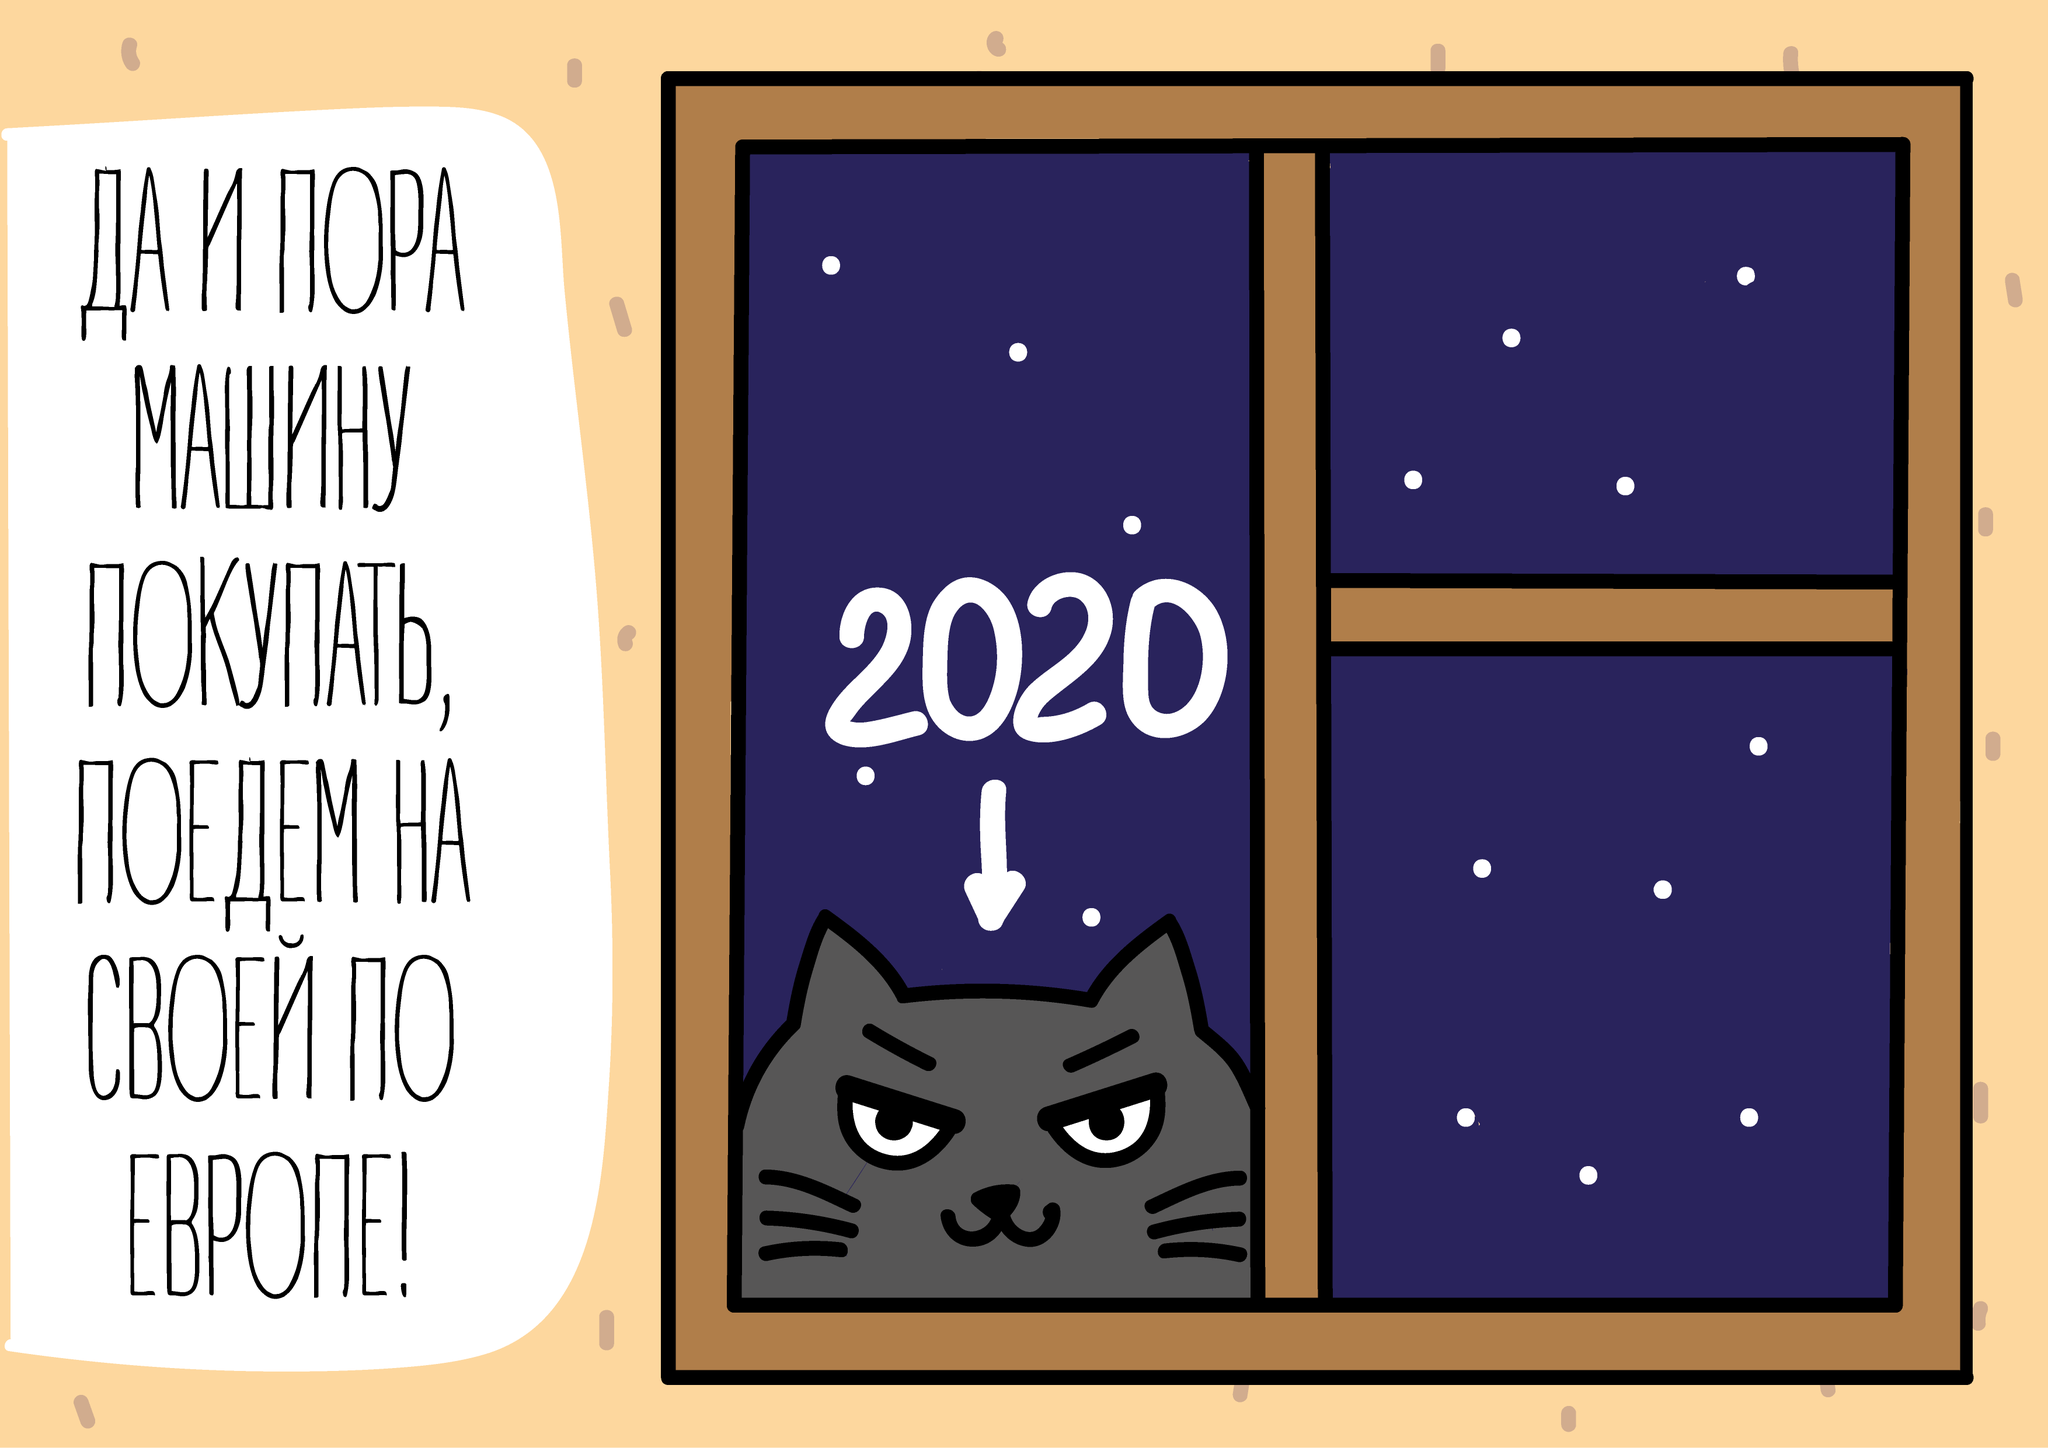 Our 2020 - My, Comics, cat, 2020, Longpost